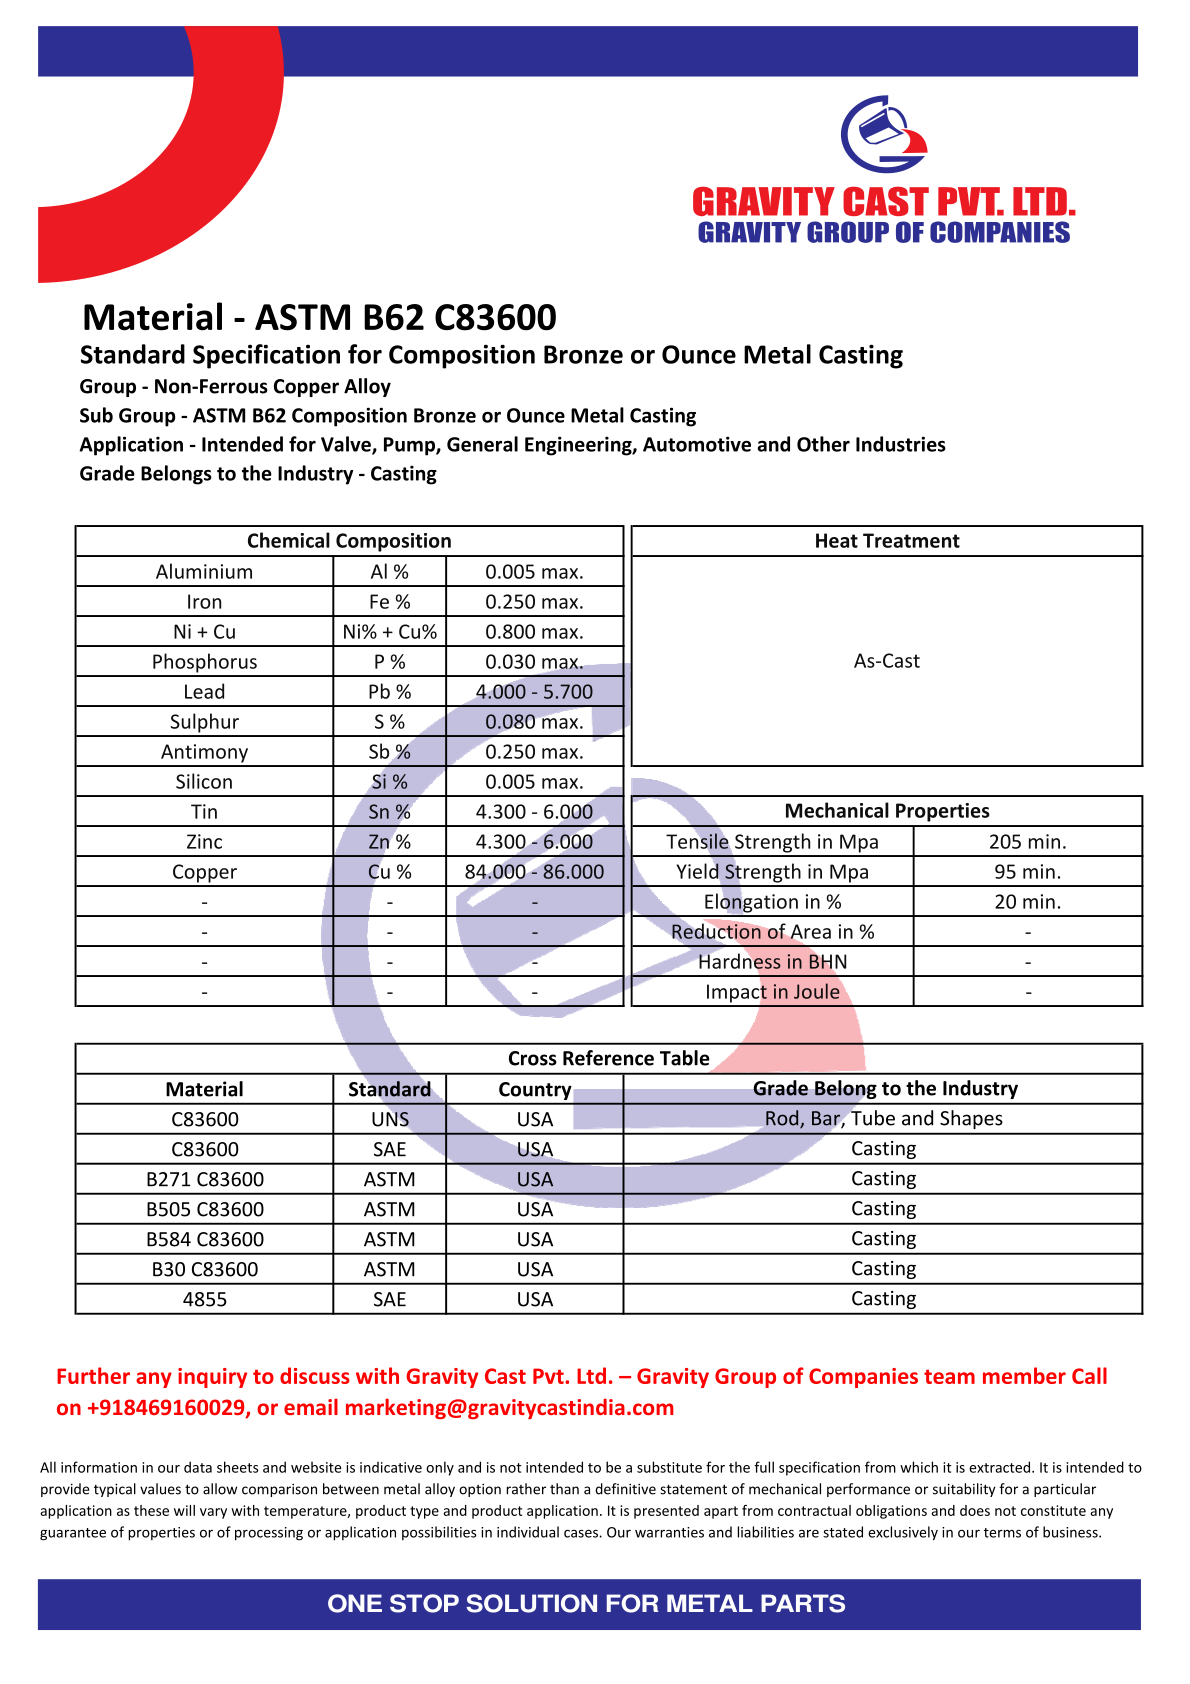 ASTM B62 C83600.pdf